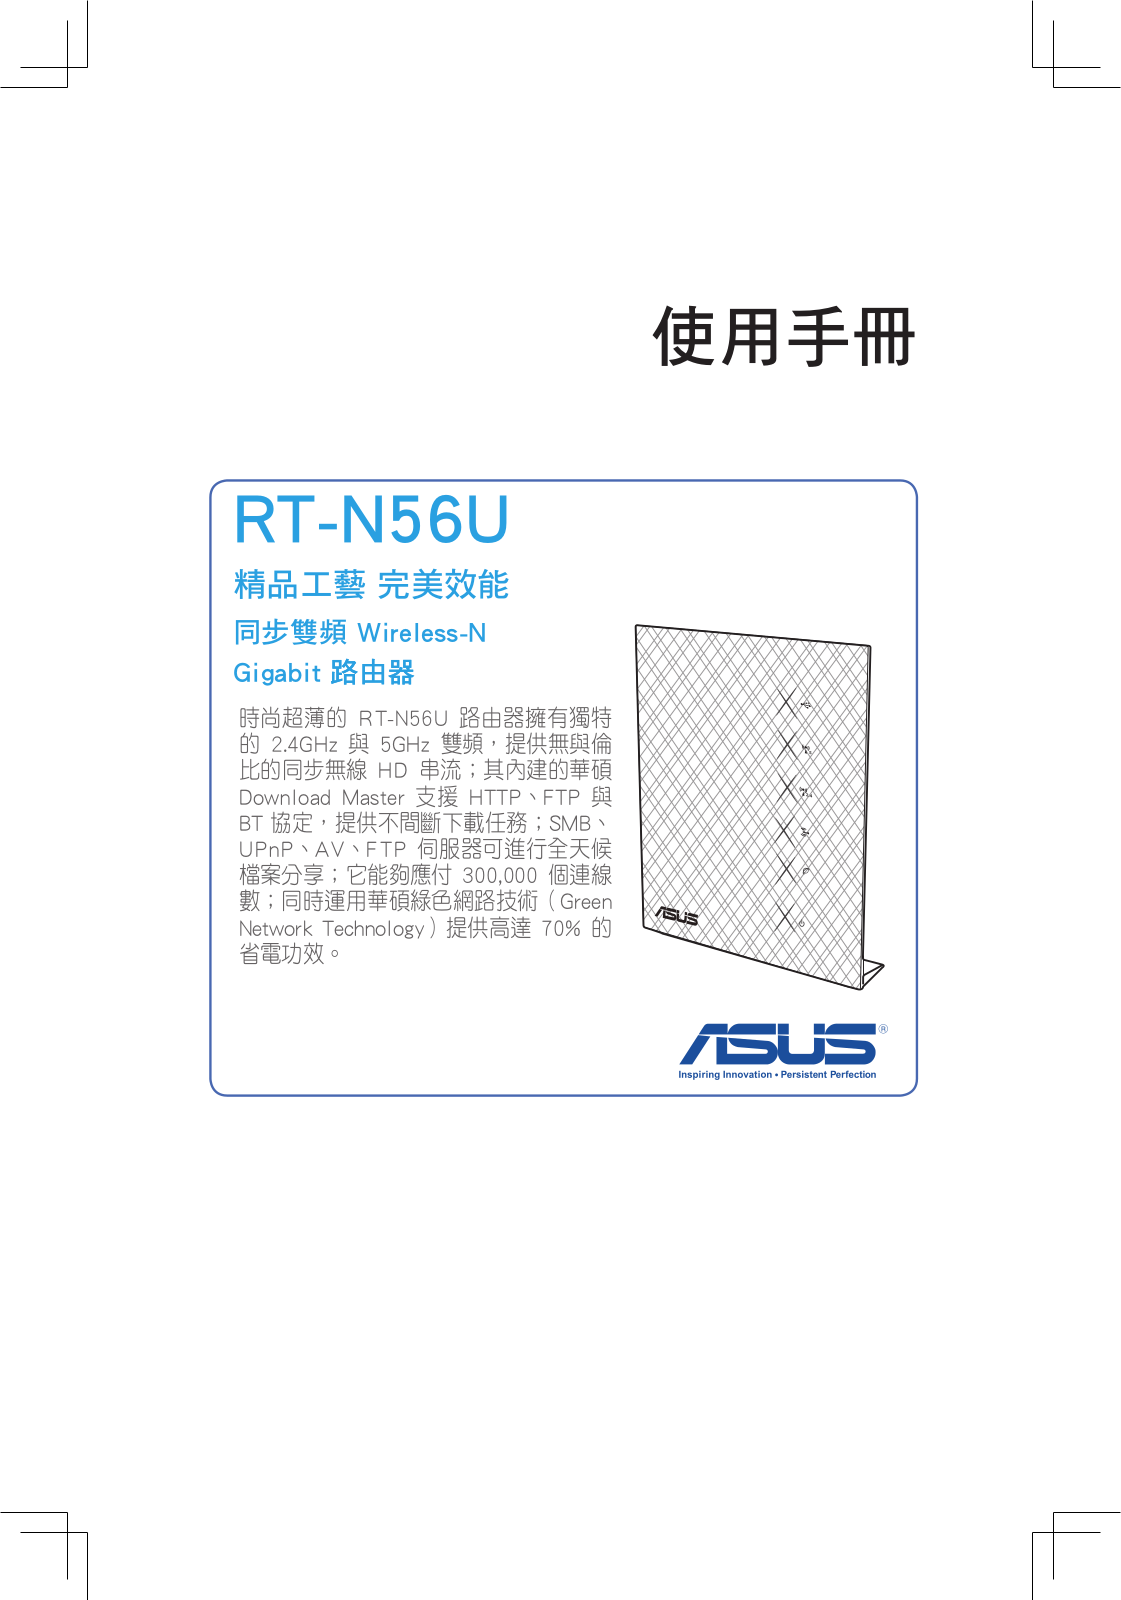 ASUS RT-N56U, T7822 User Manual